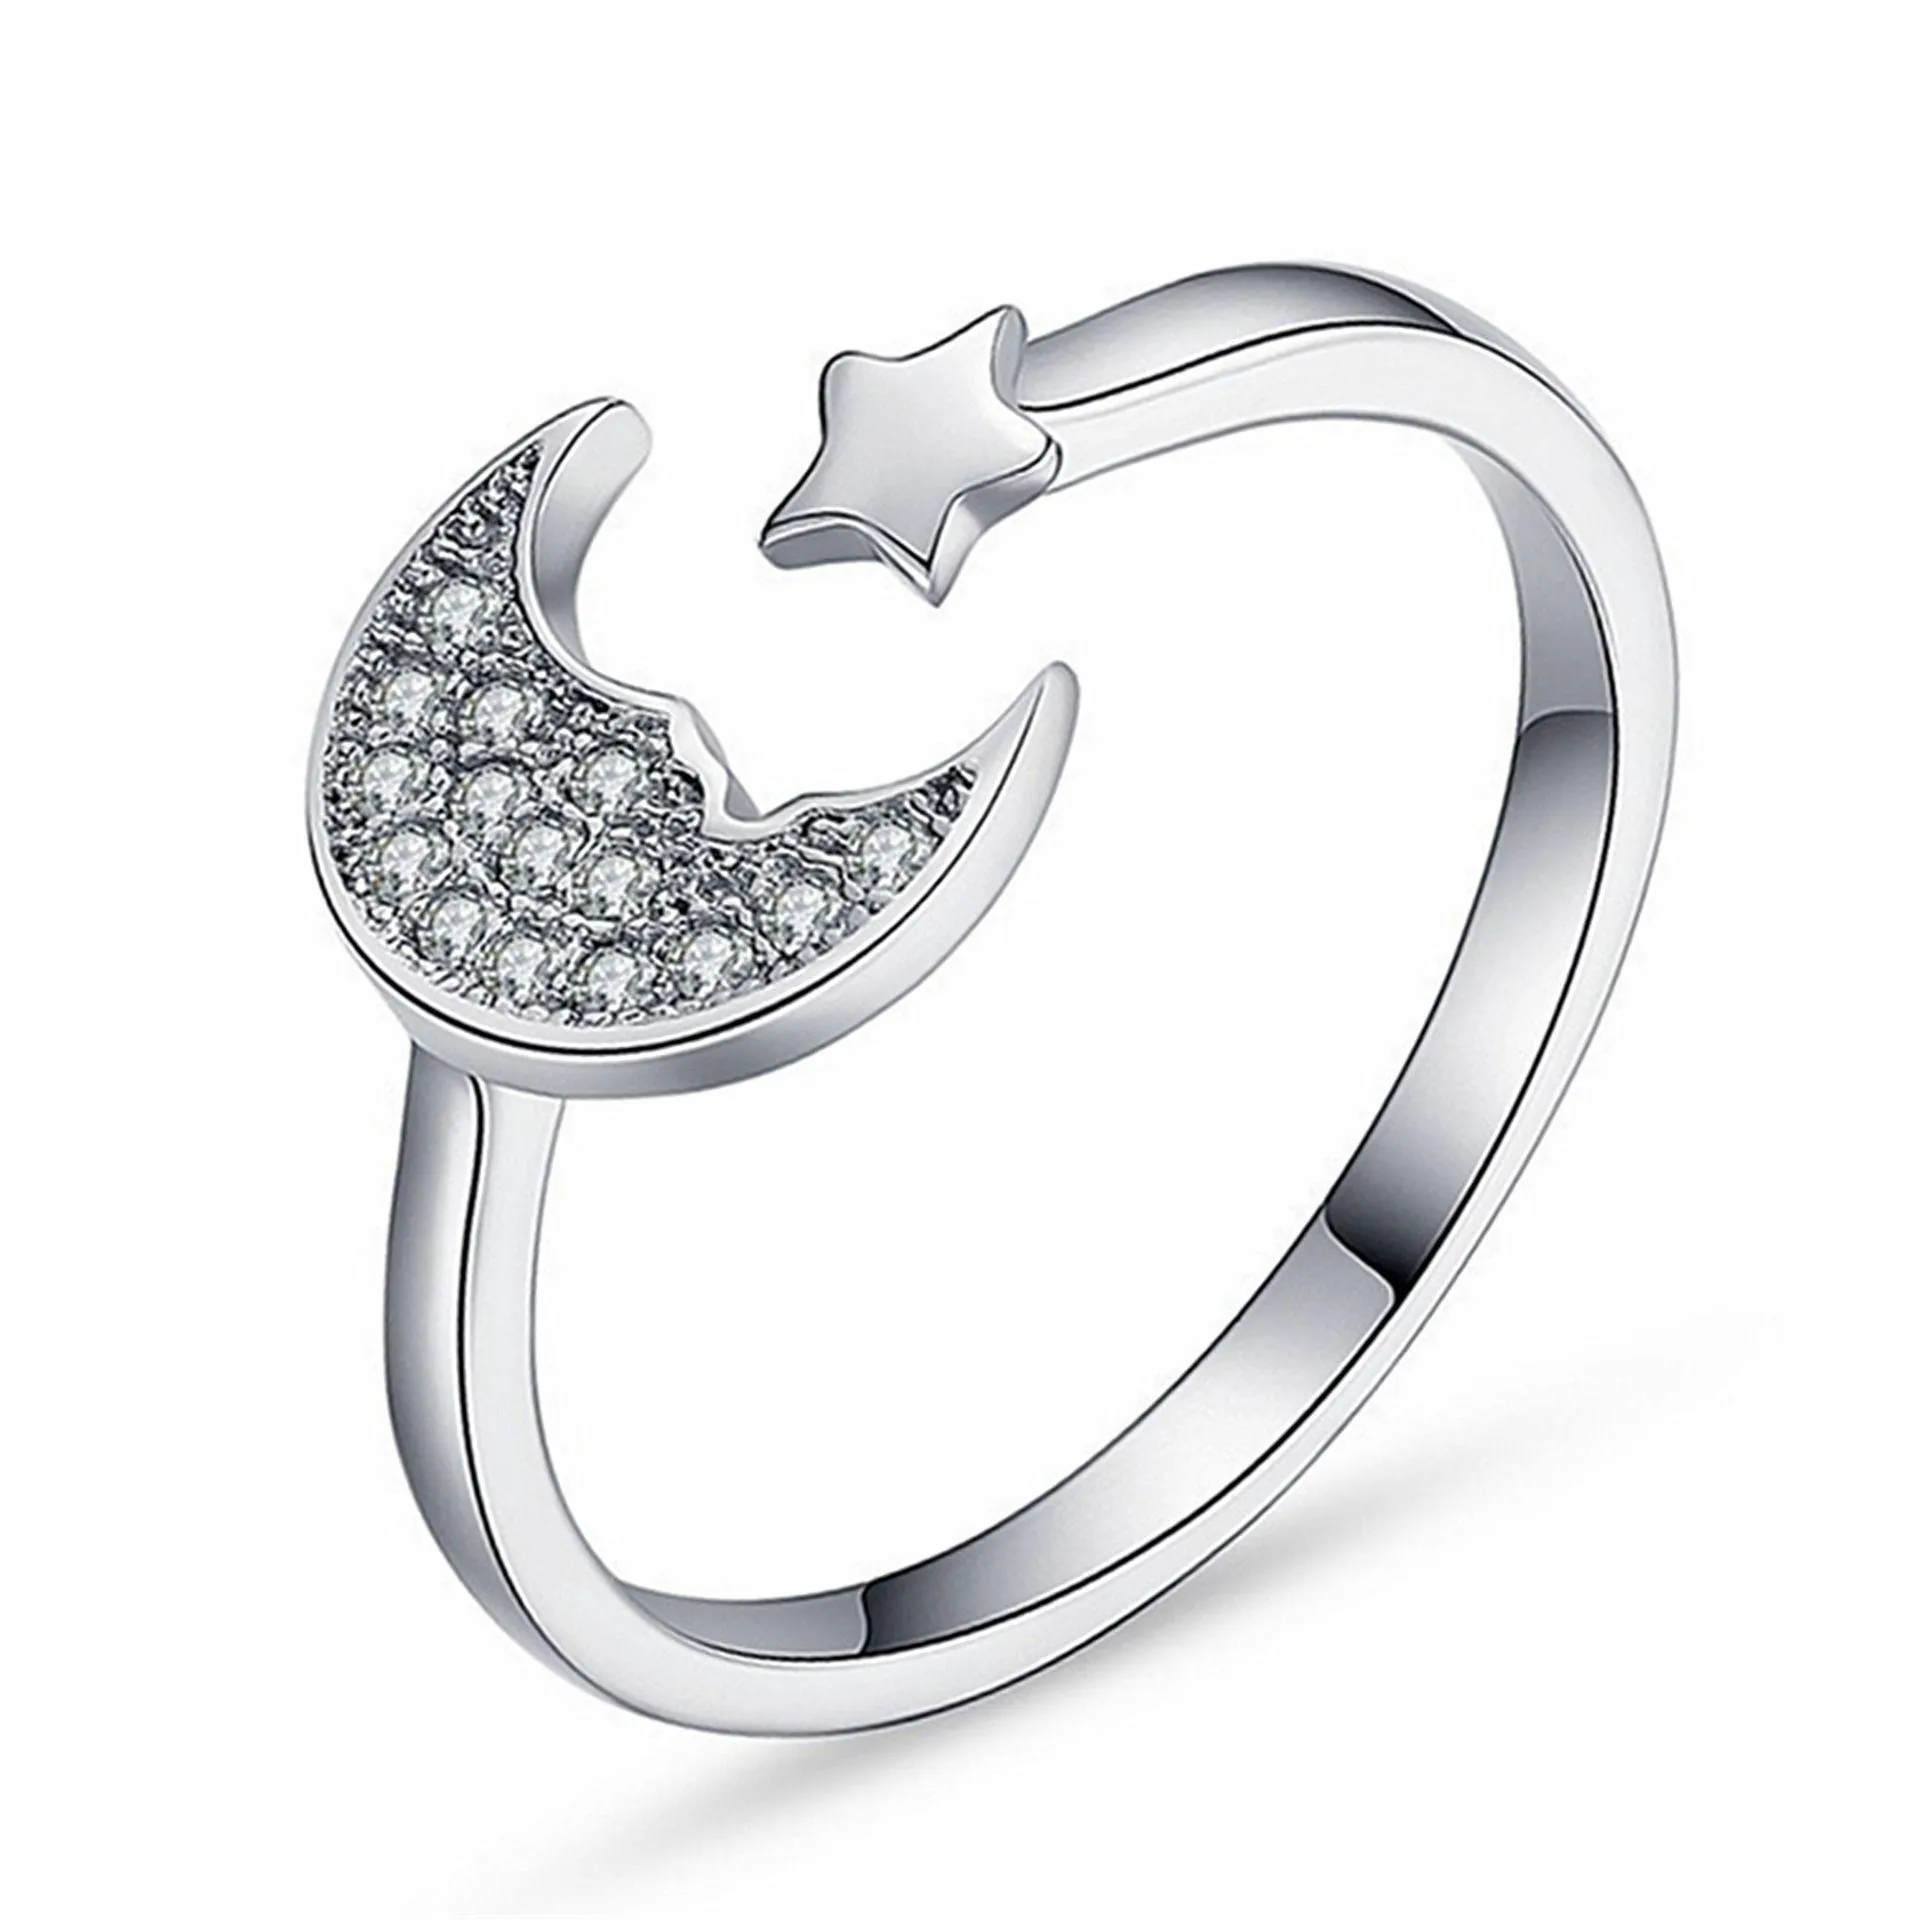 Cluster Rings Crystal Moon Star Sier открытый регулируемый кольцо модные украшения подарка Will Will и Sandy Drop Deliver Dhjrm